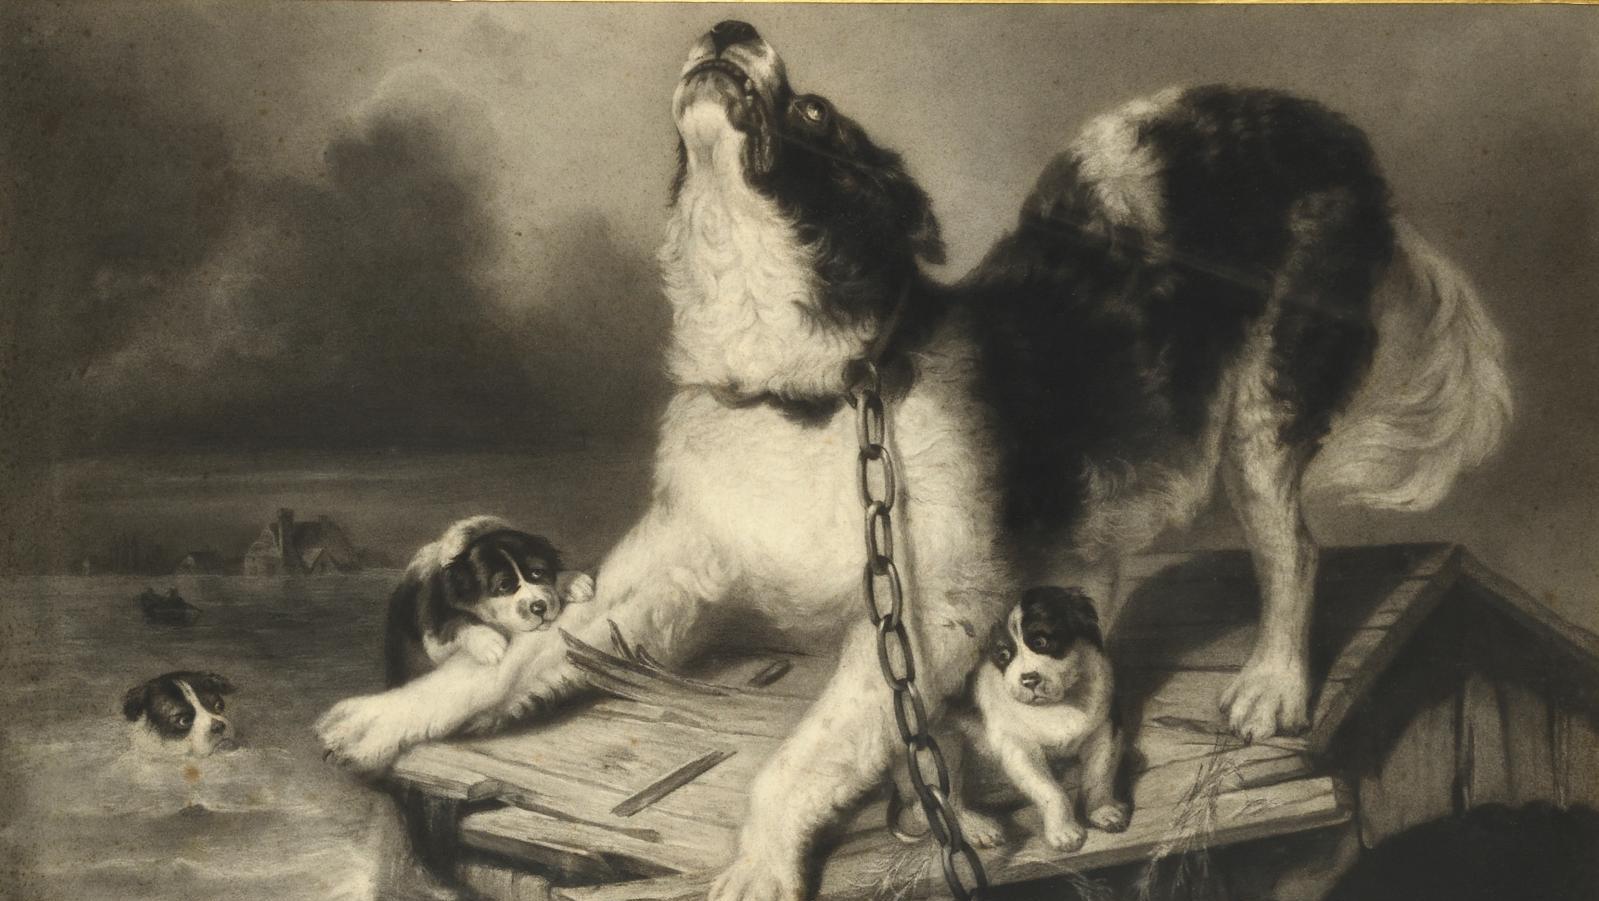 Rosa Bonheur (1822-1899), Famille de chiens à la dérive sur une niche, étude et esquisse... Un dessin de Rosa Bonheur d'après Edwin Landseer 